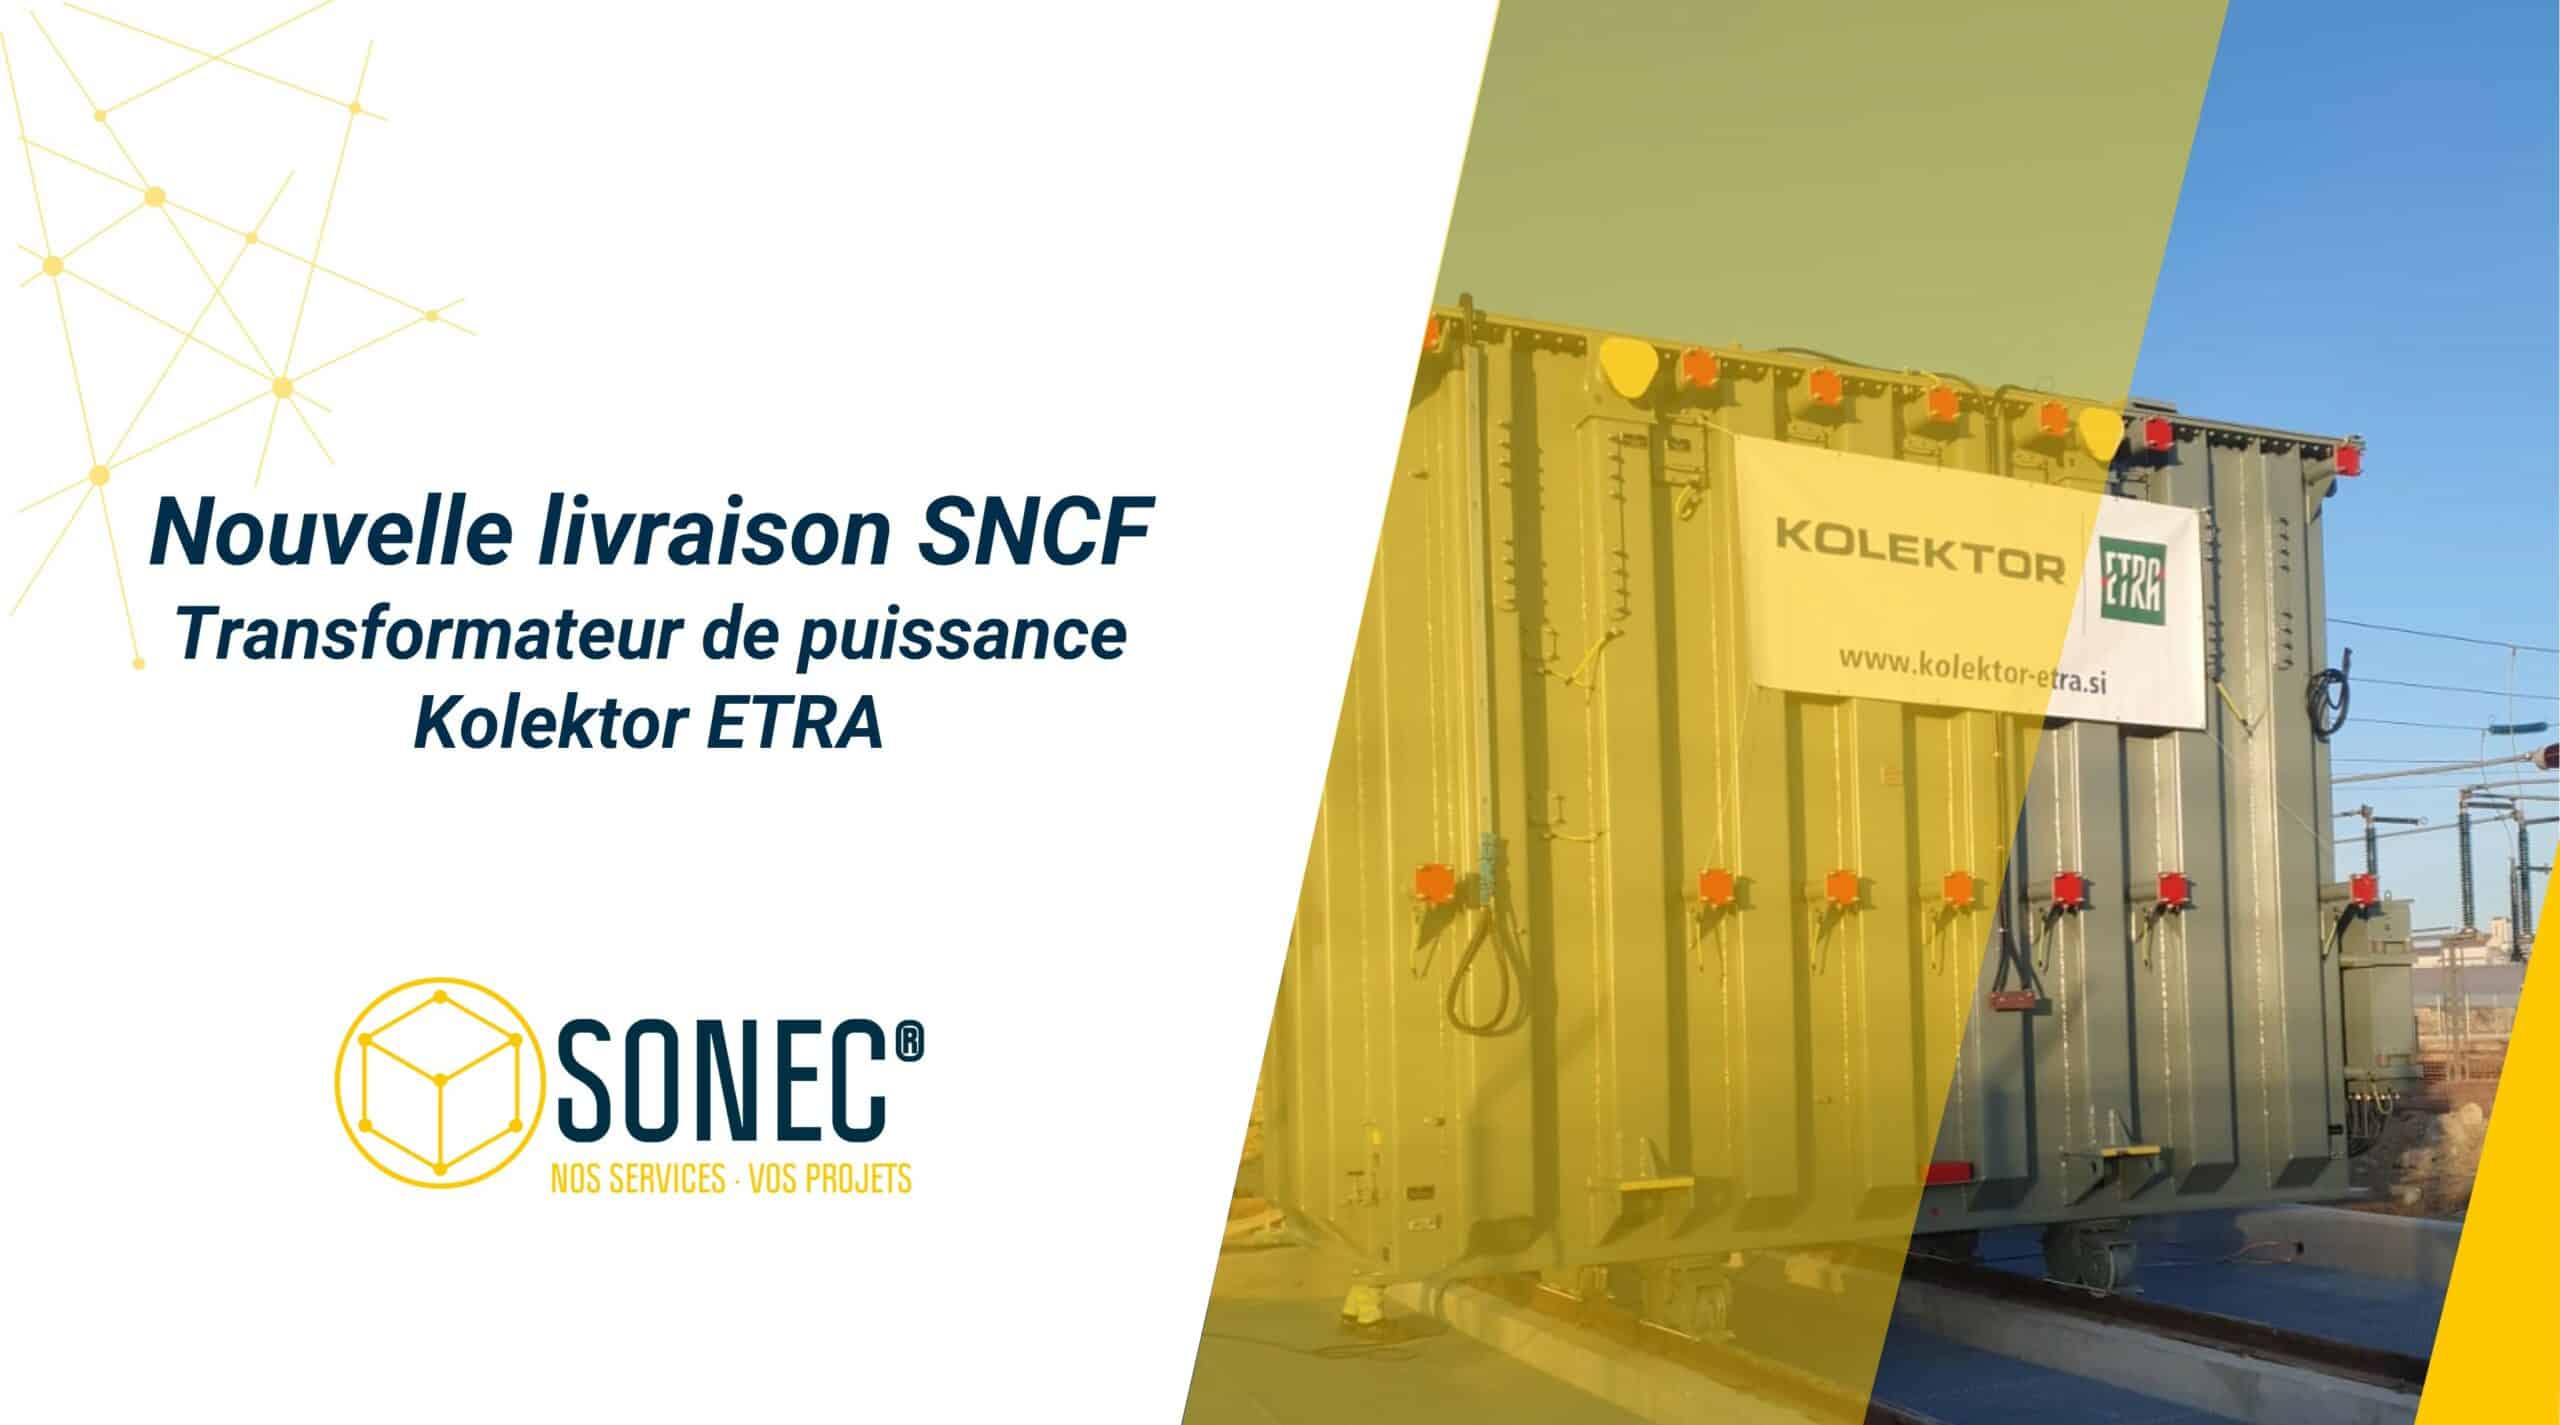 SONEC® è la prima azienda in Europa ad aver ottenuto il marchio KESA per la supervisione dell'assemblaggio dei trasformatori elettrici Kolektor ETRA.